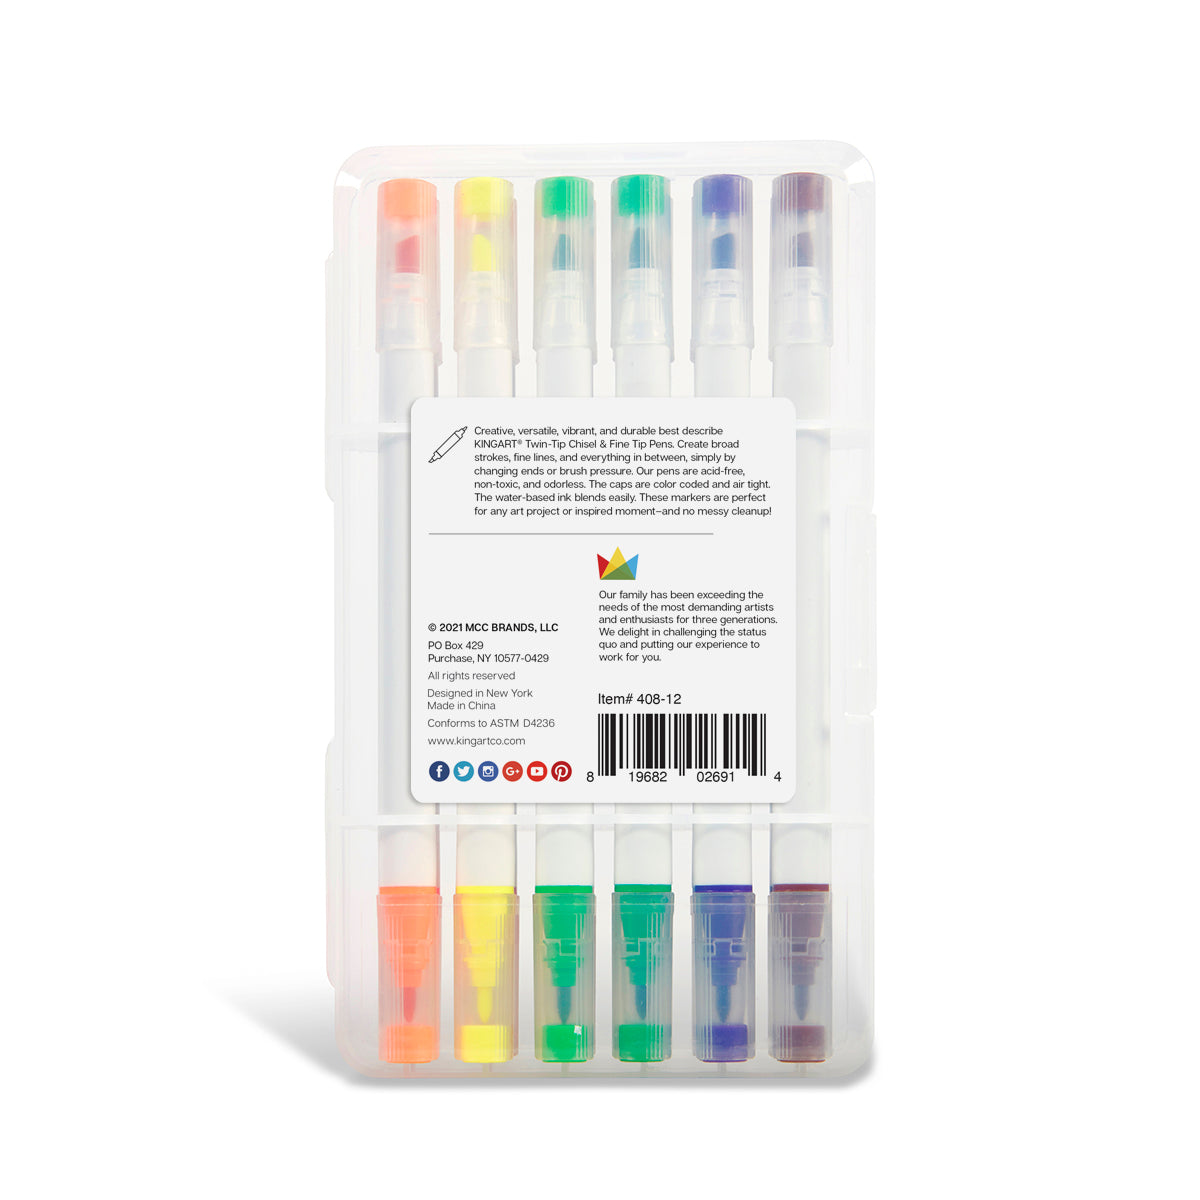 KINGART® Chisel & Fine Tip Markers, Travel Storage Case, Set of 12 Colors